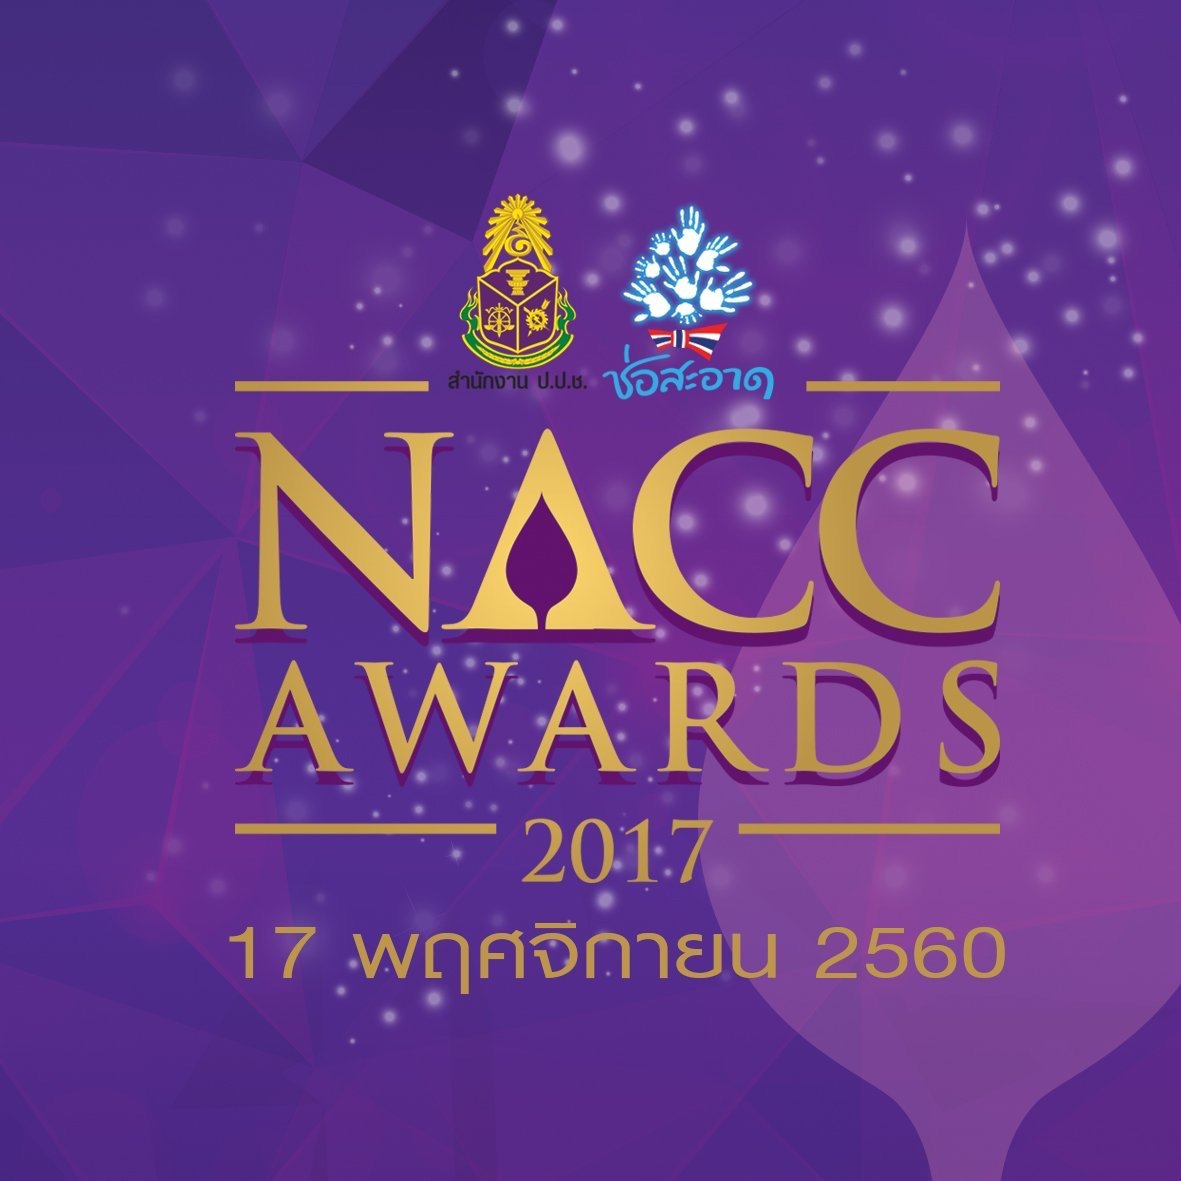 ป.ป.ช.มอบรางวัล NACC Award 2017 เนื่องในโอกาสครบรอบ 18 ปี